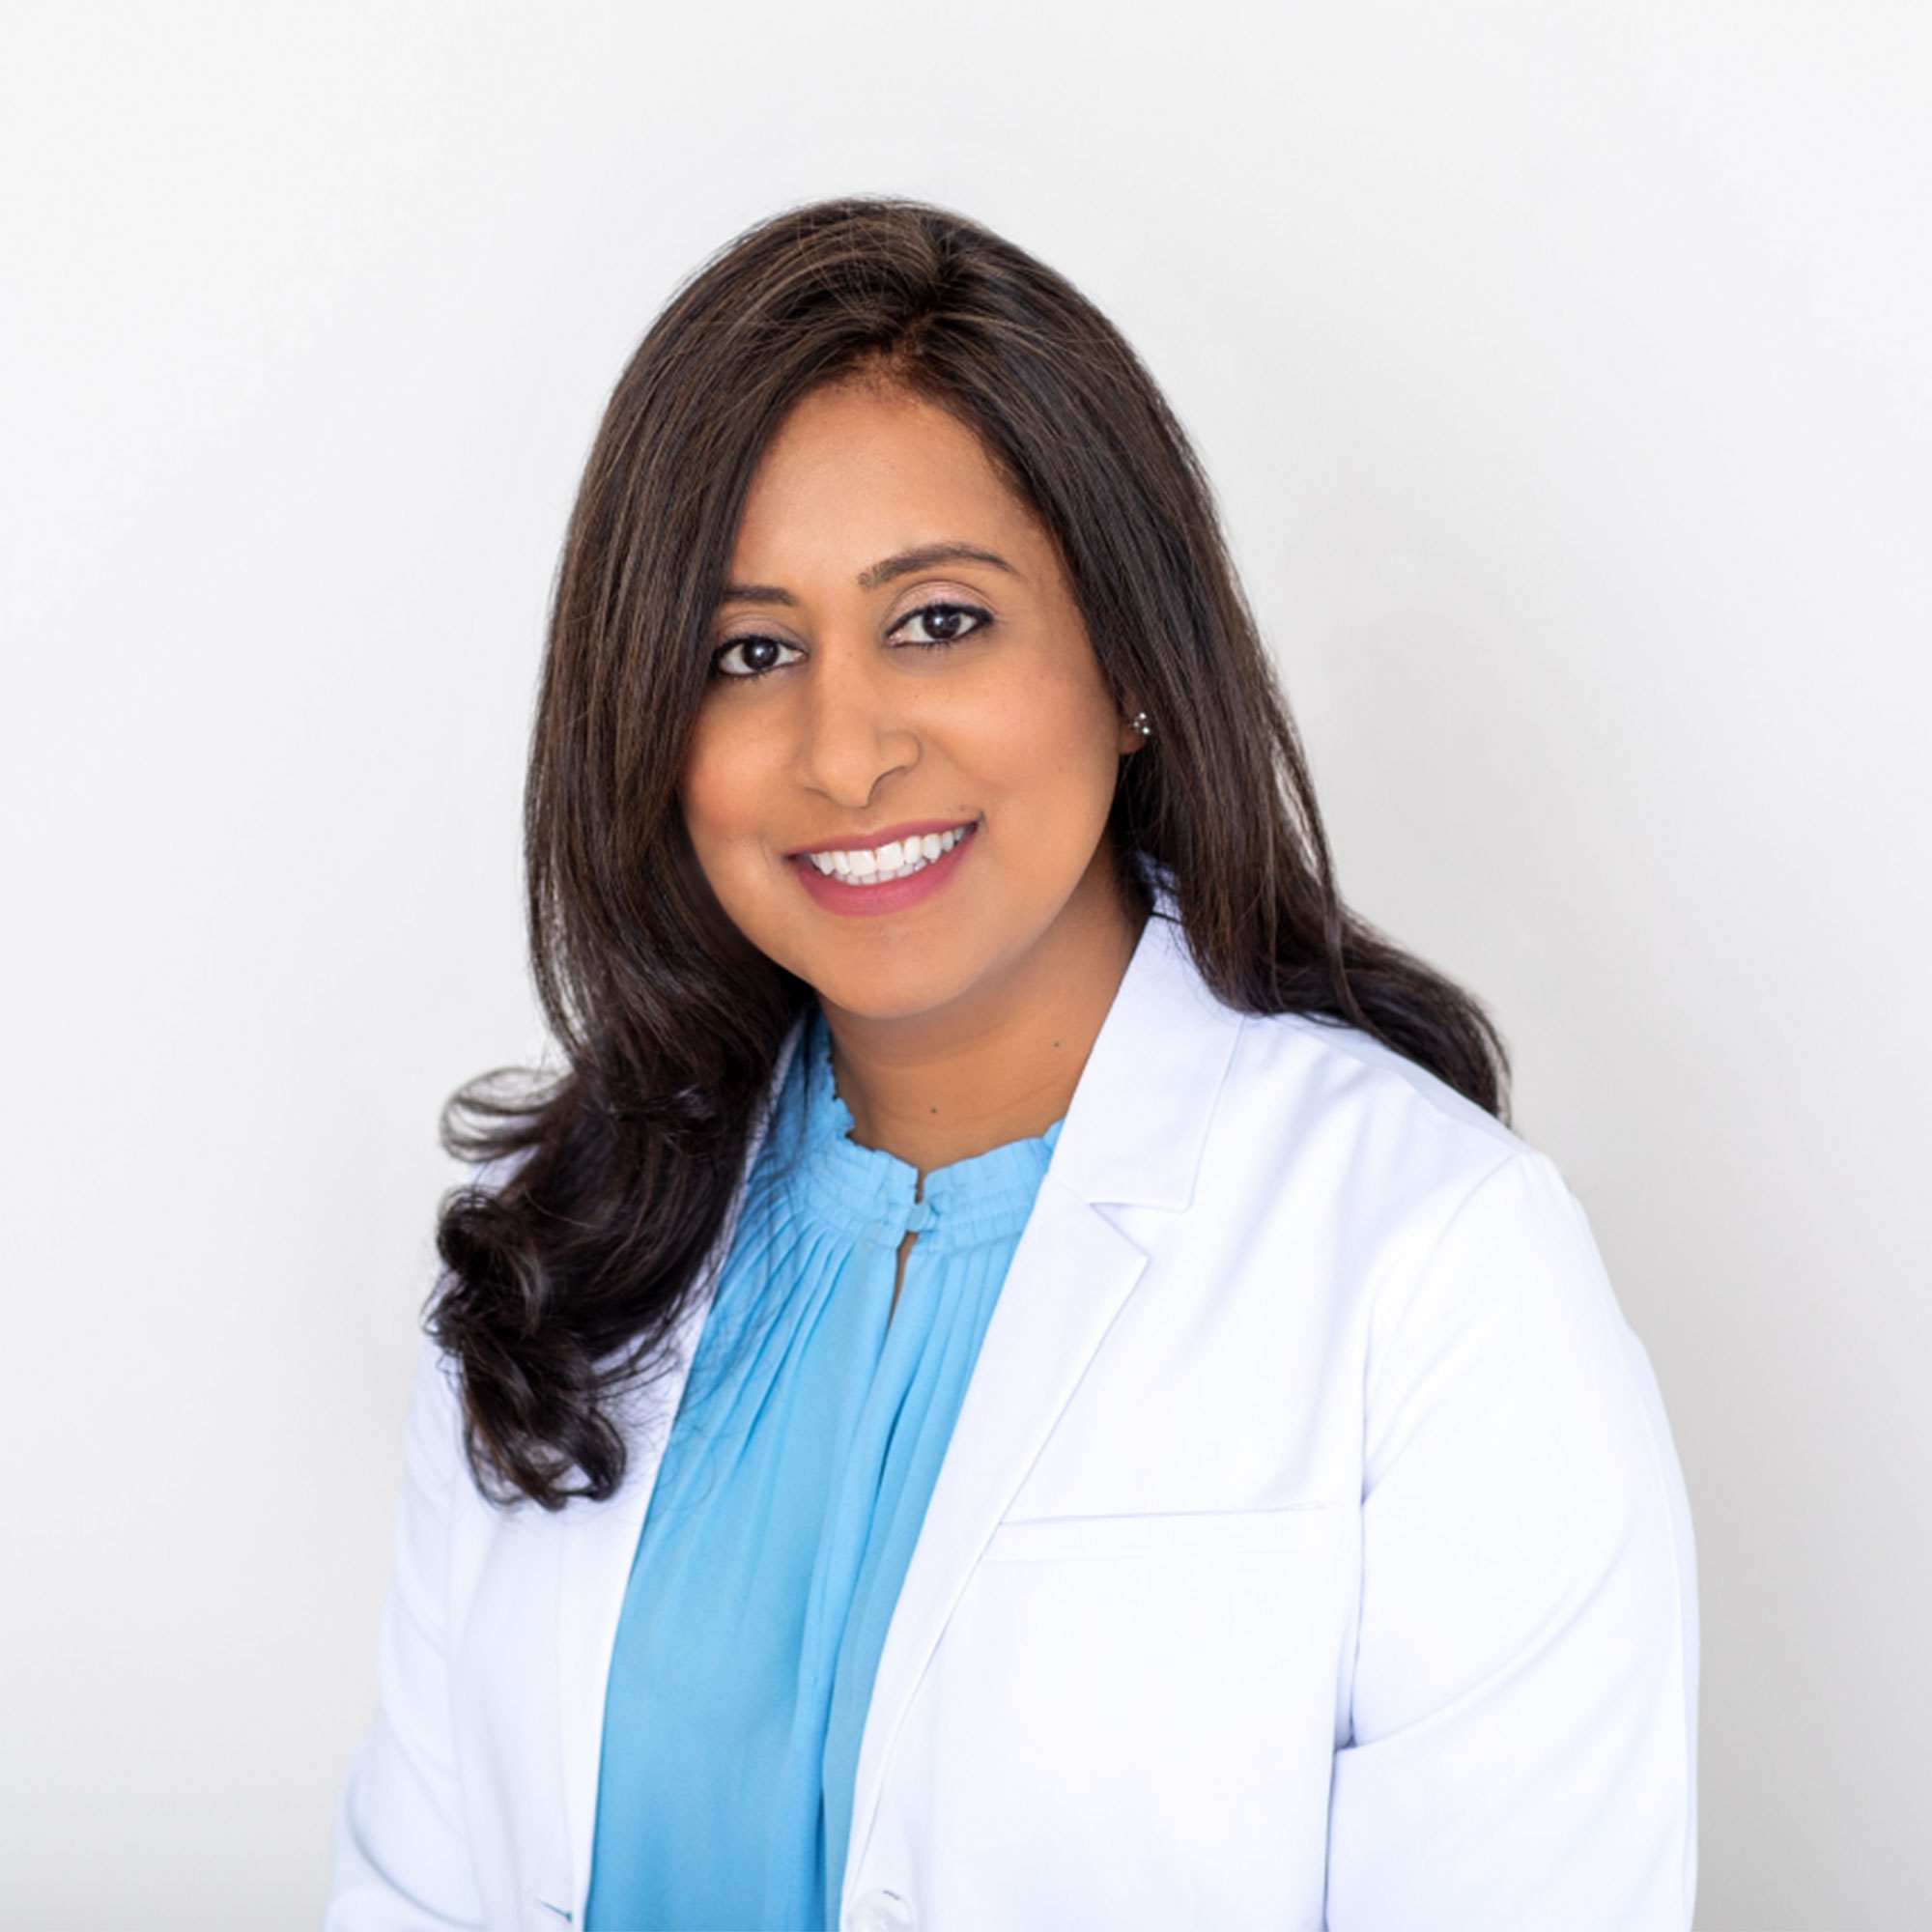 Dr. Aesha Chaudhry